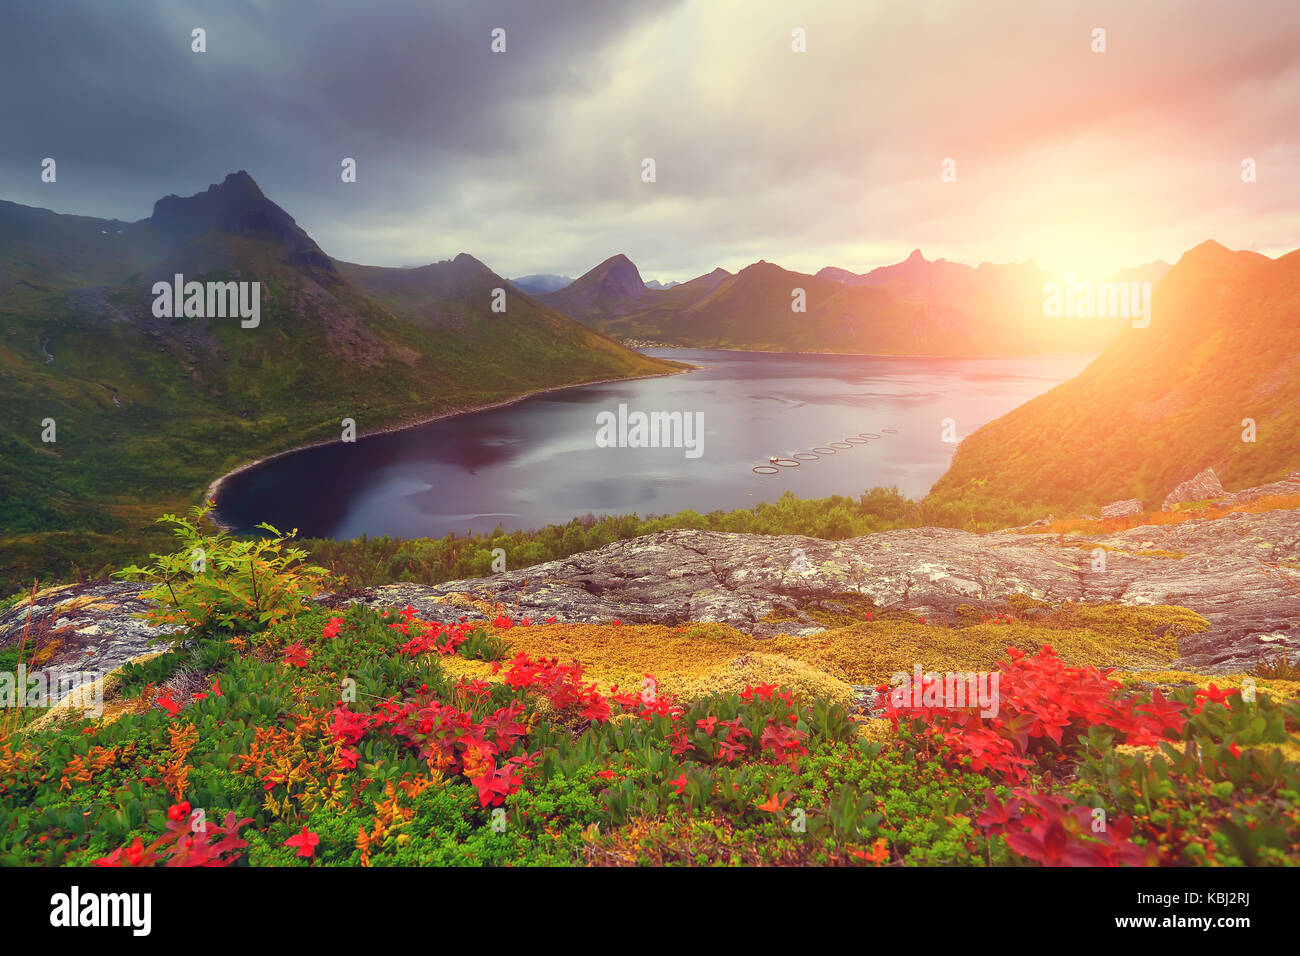 Automne nature. Feuillage coloré sur les collines de montagne. soleil levant illumine fjord. automne paysage norvégien. Banque D'Images